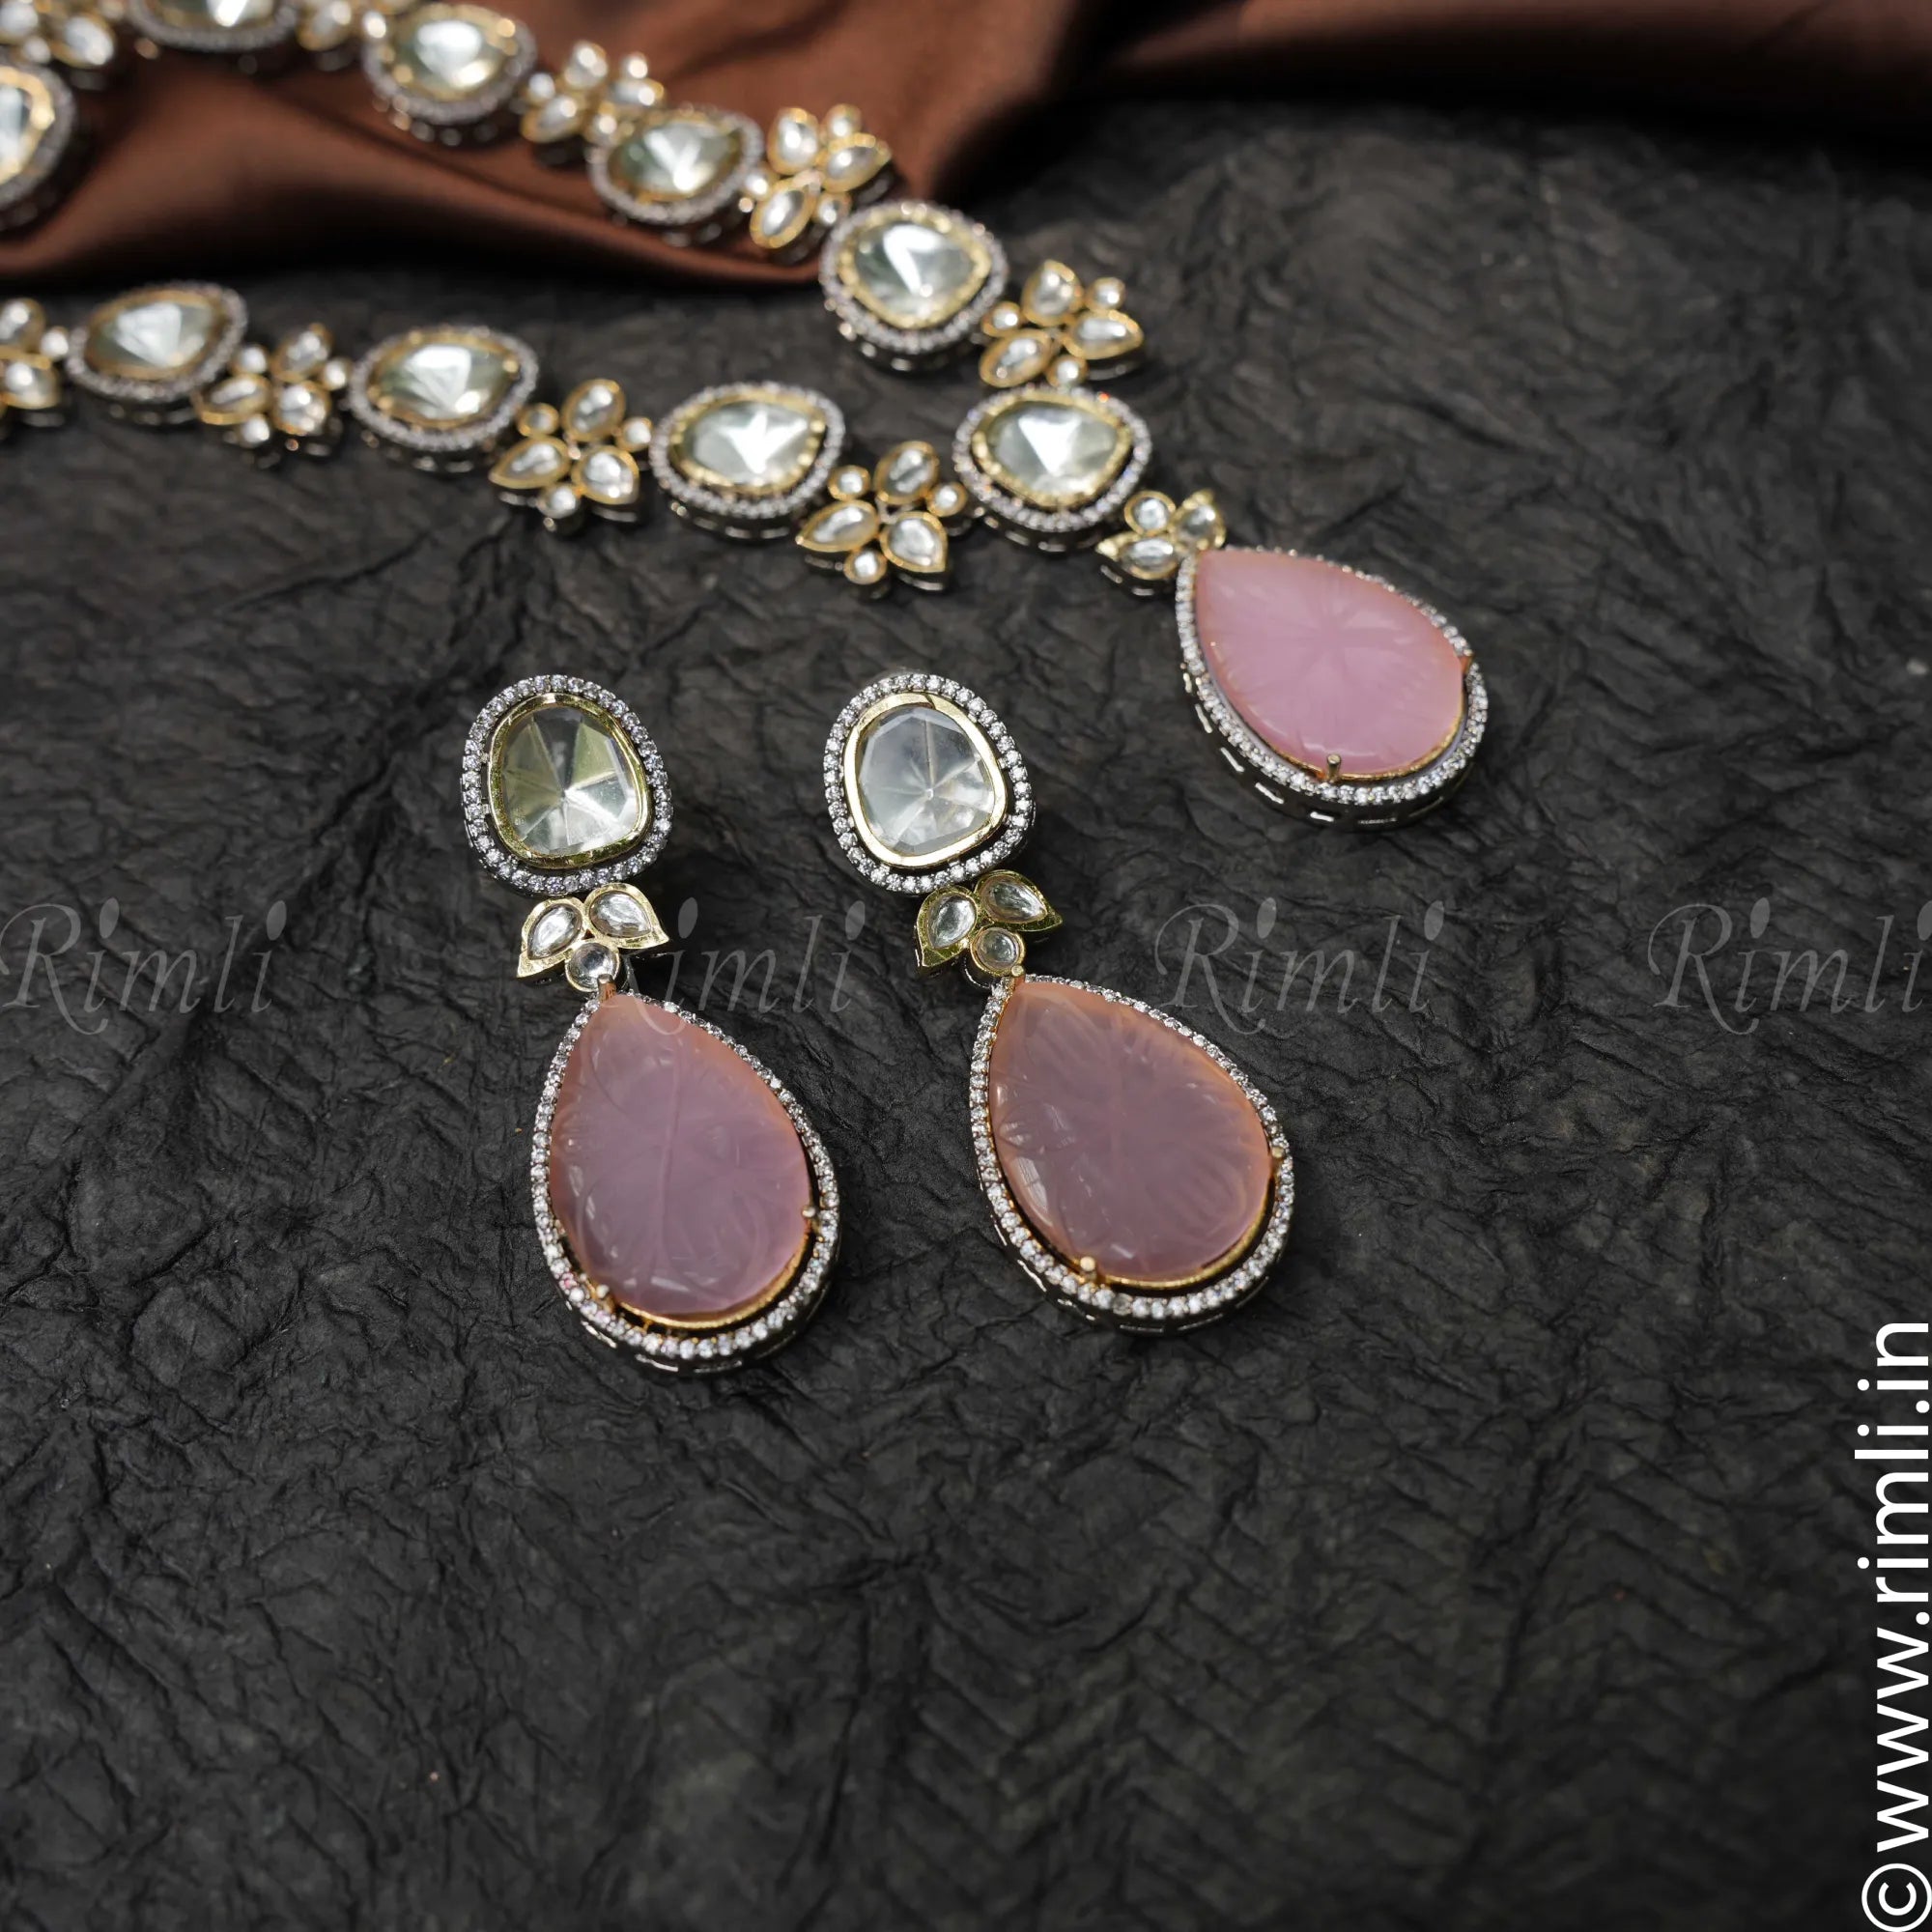 Aruna Victorian Kundan Necklace - Pink